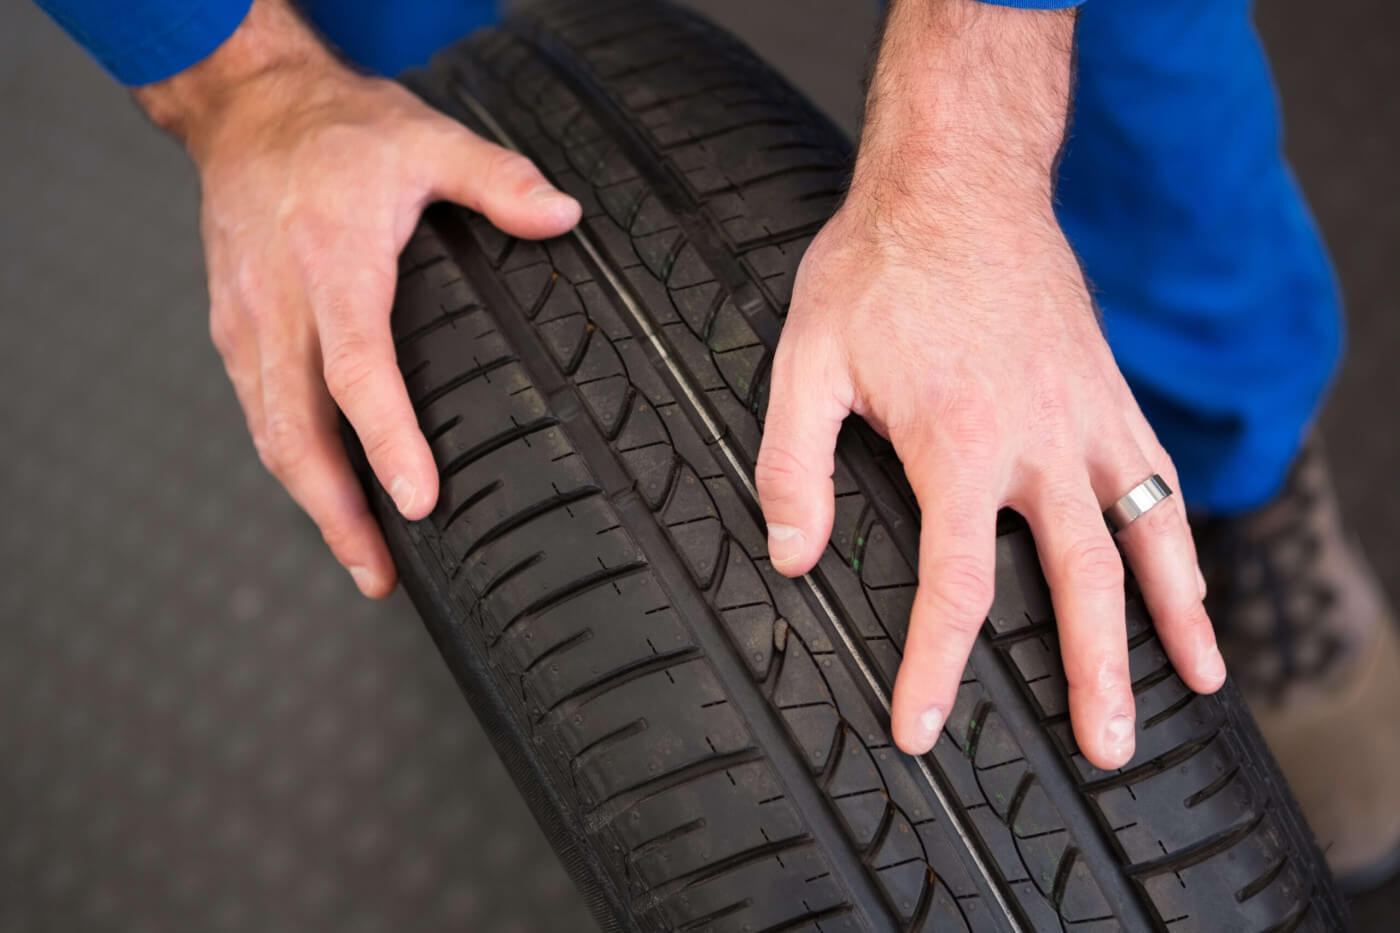 Jauge d'épaisseur de pneu de voiture numérique pour la surveillance sûre de  la bande de roulement des pneus de voiture et la mesure de la détection de  l'usure des pneus Instrument de